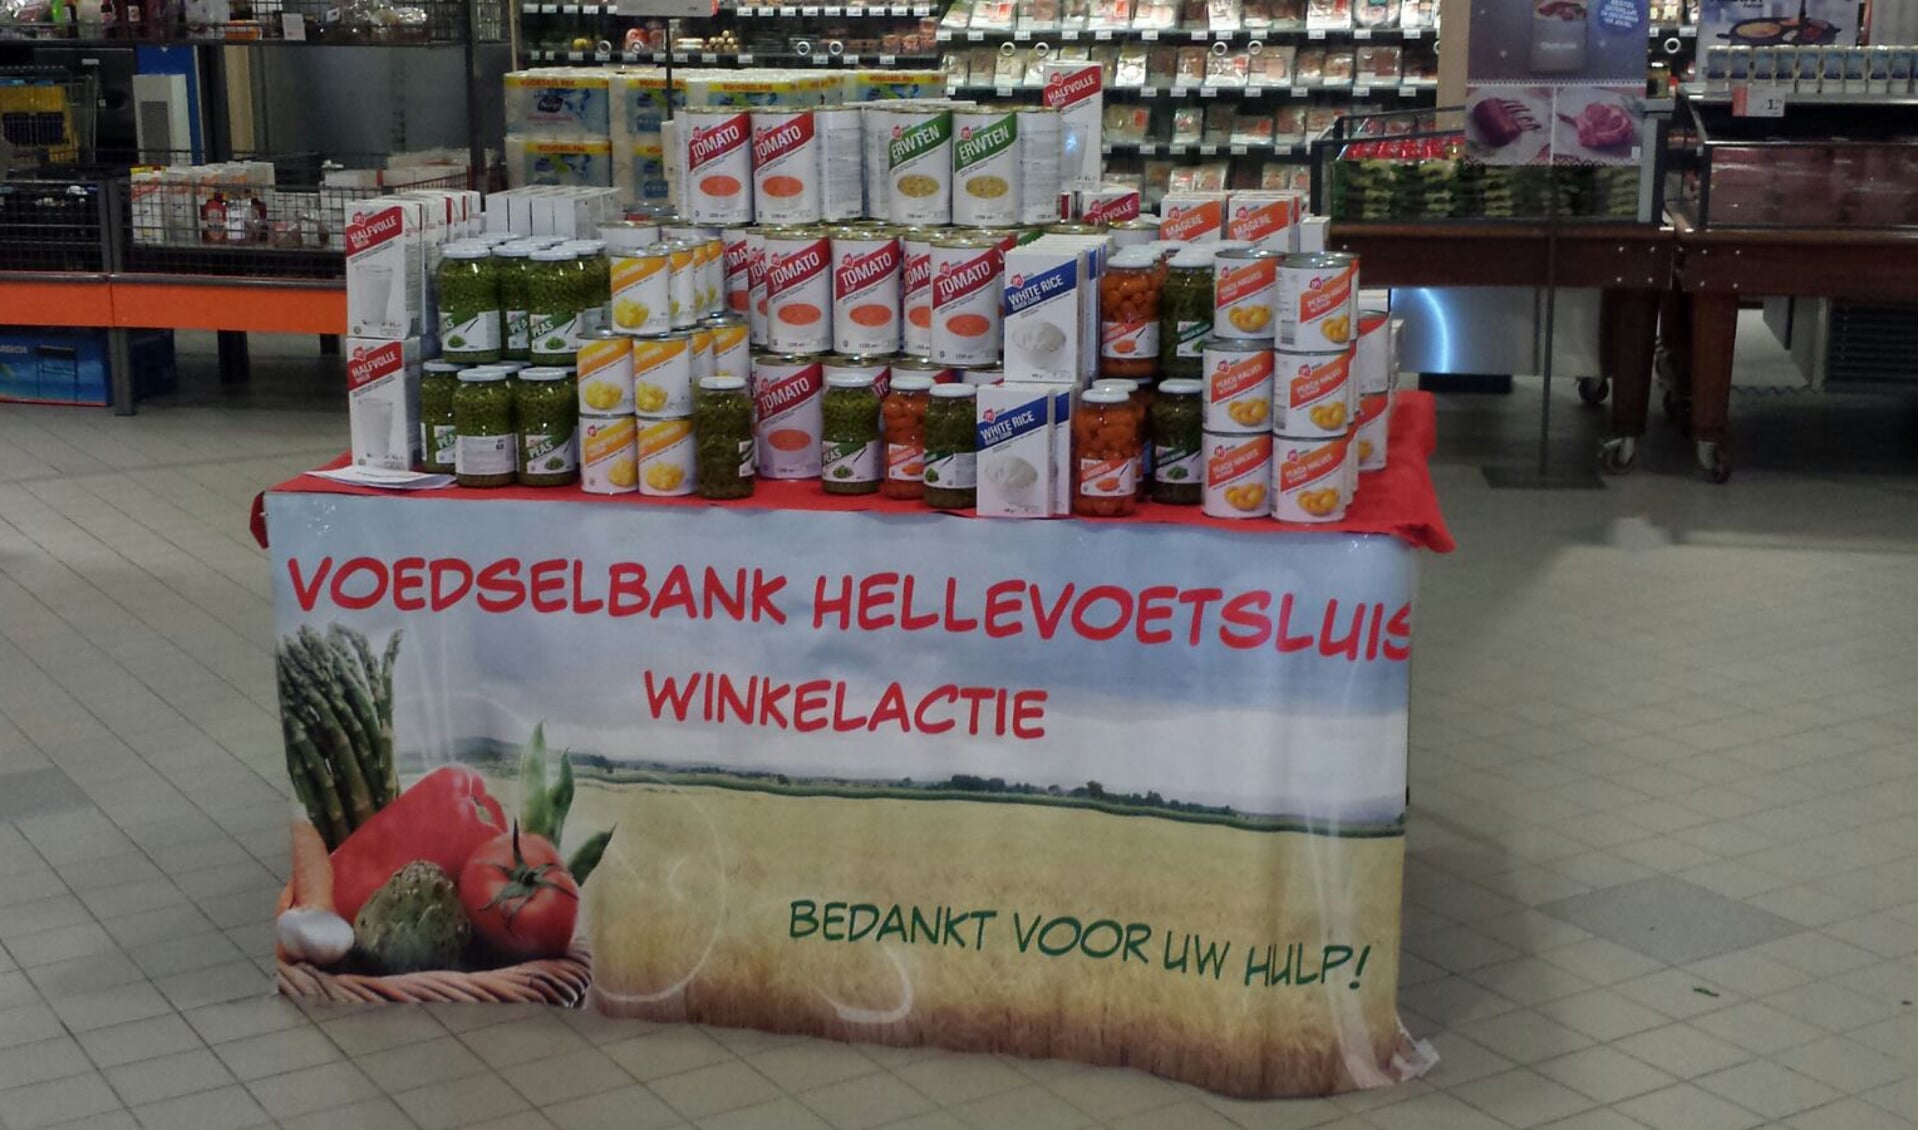 De Hellevoeters merken het meest van de Voedselbank door de winkelacties. Maar de organisatie verzet veel meer werk! 